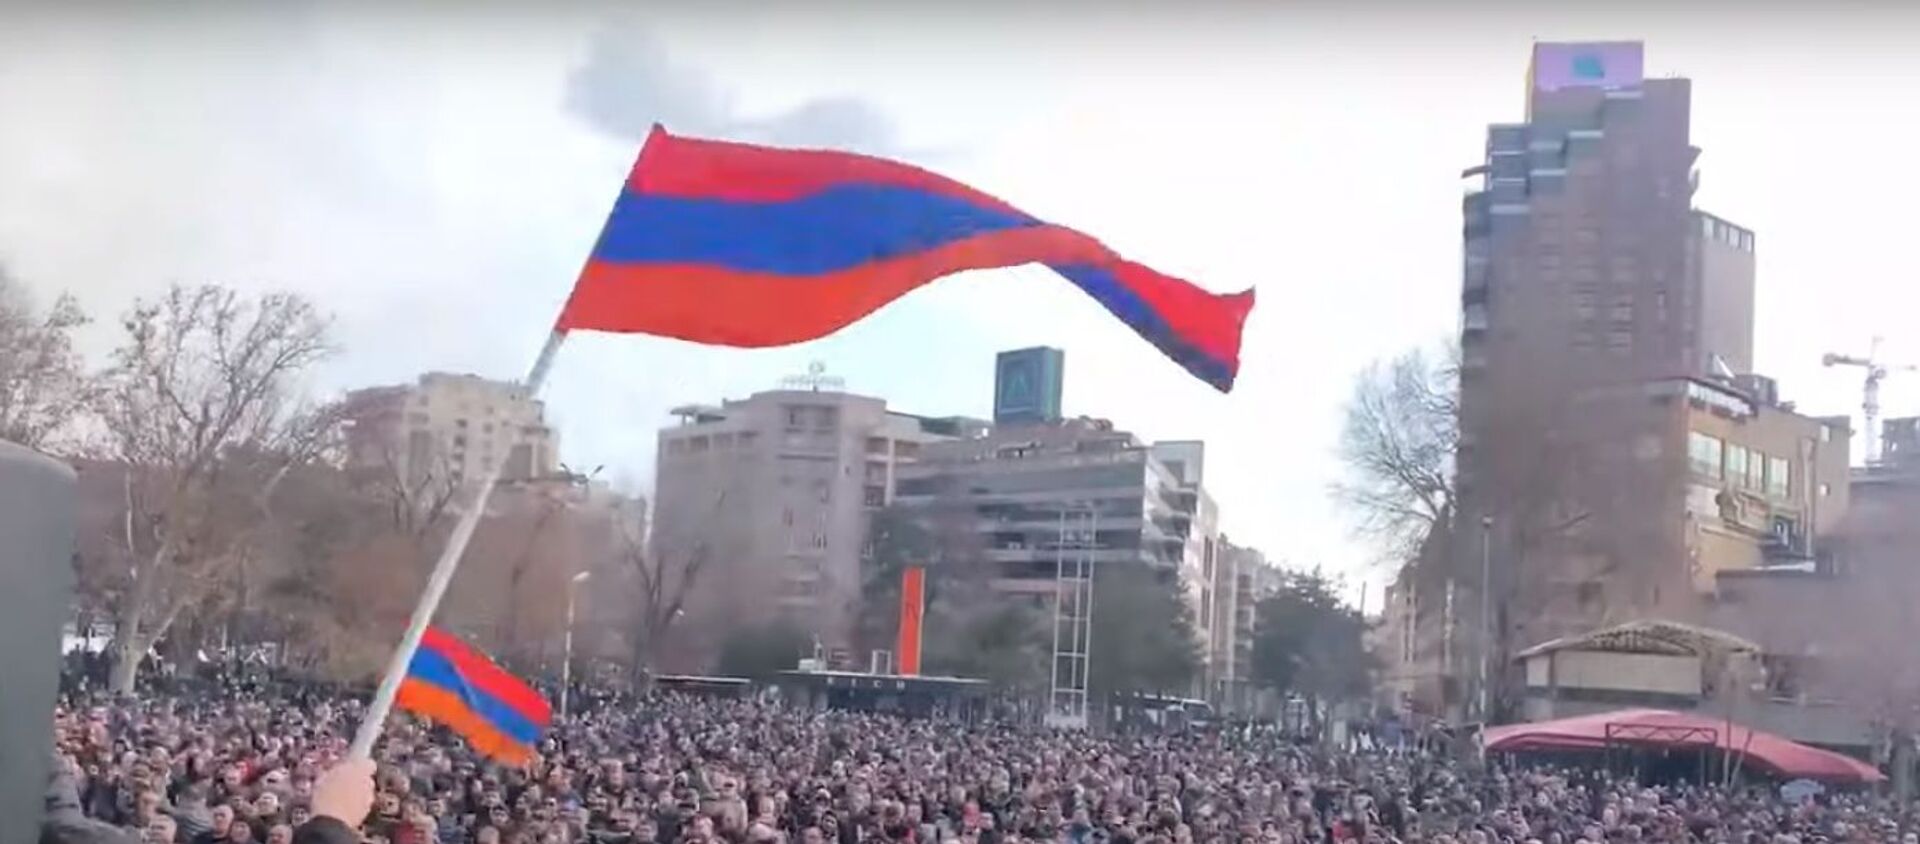 Протесты против Пашиняна: главное о ситуации в Армении - Sputnik Узбекистан, 1920, 26.02.2021